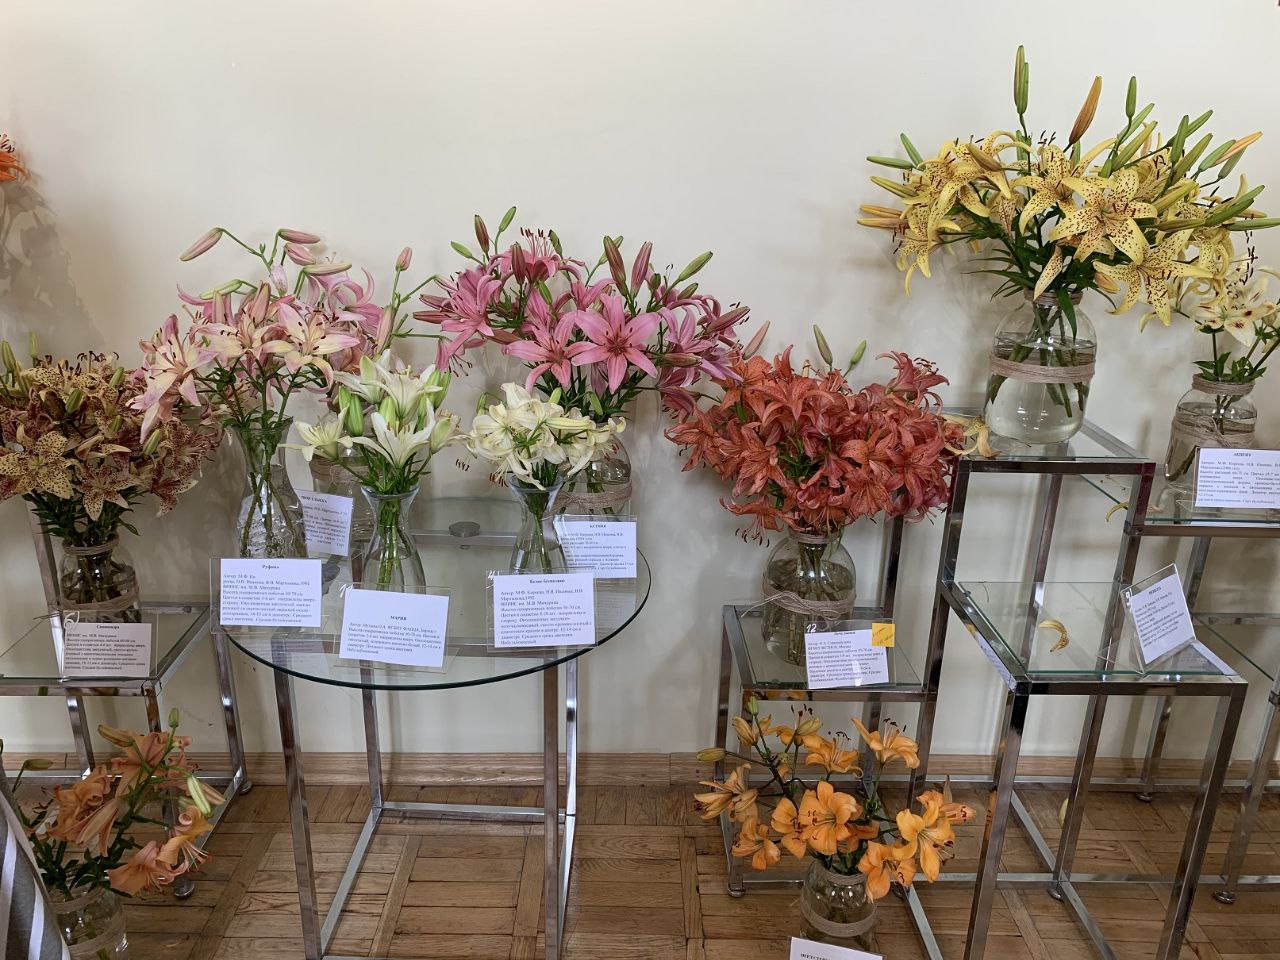 35 сортов азиатских лилий представили на цветочном фестивале в Якутске